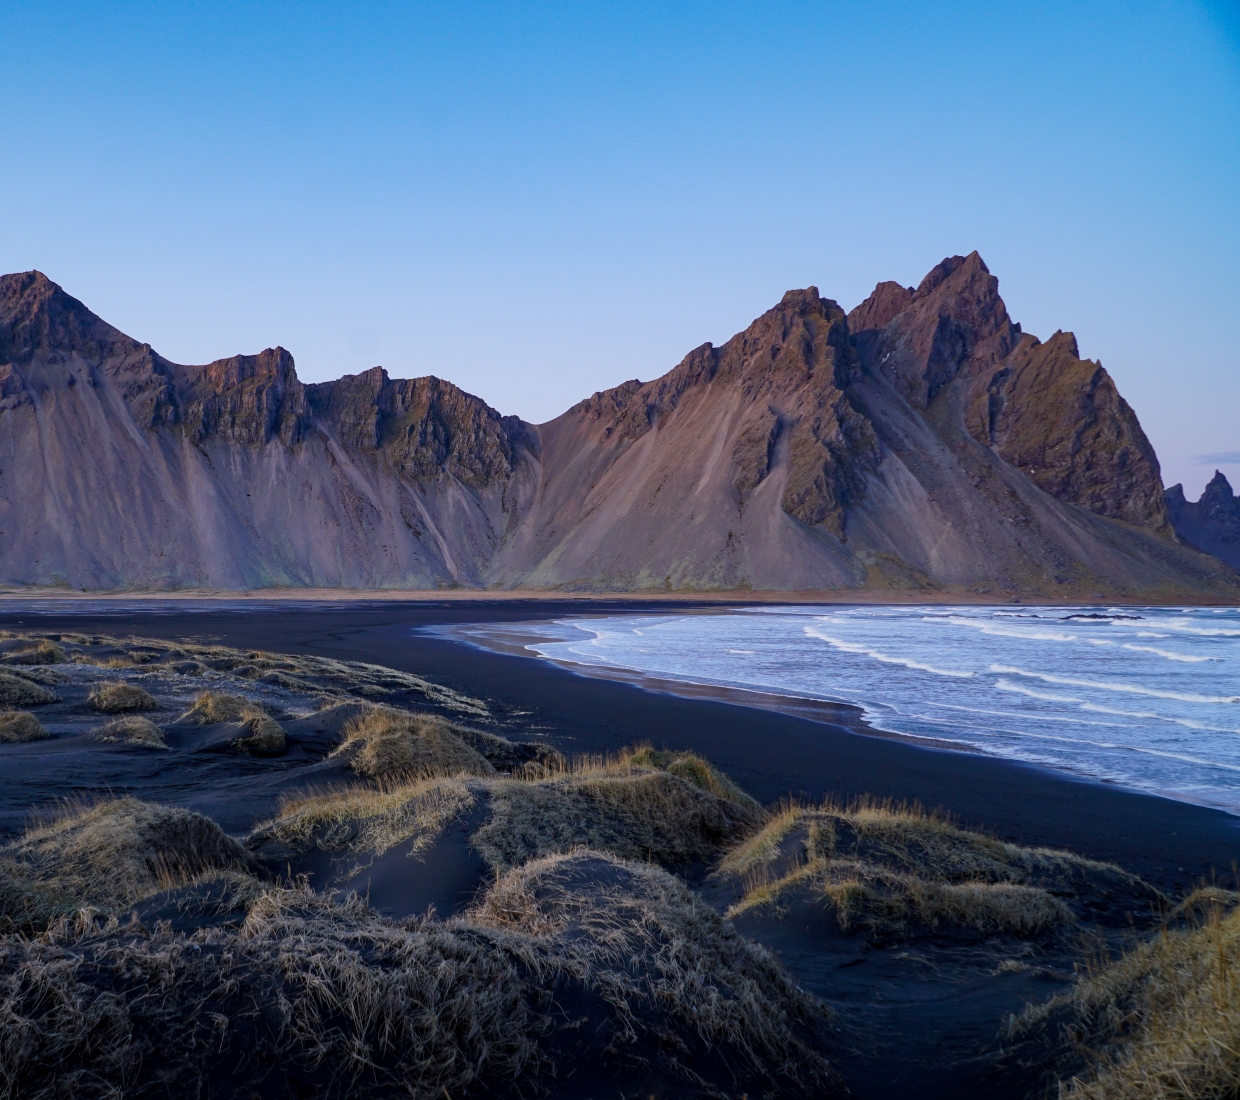 Reiseführer zu besonders schönen Unterkünften in Island